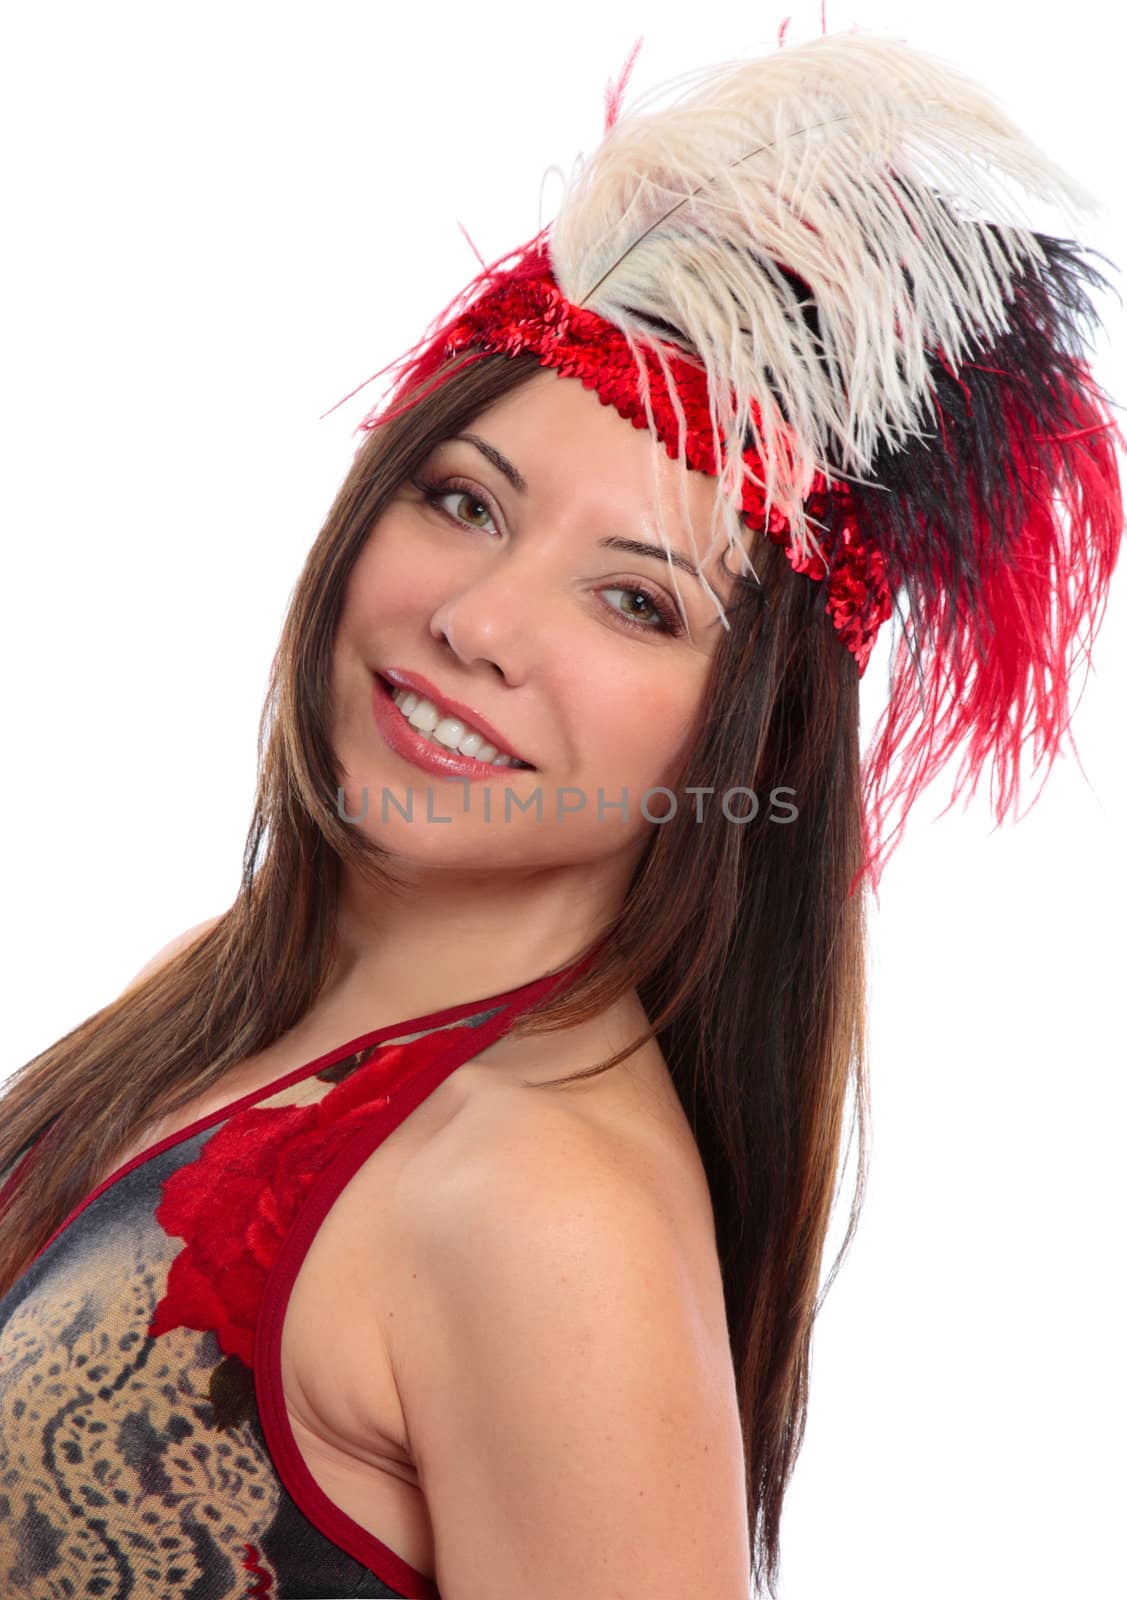 A beautiful woman wearing decorative headdress